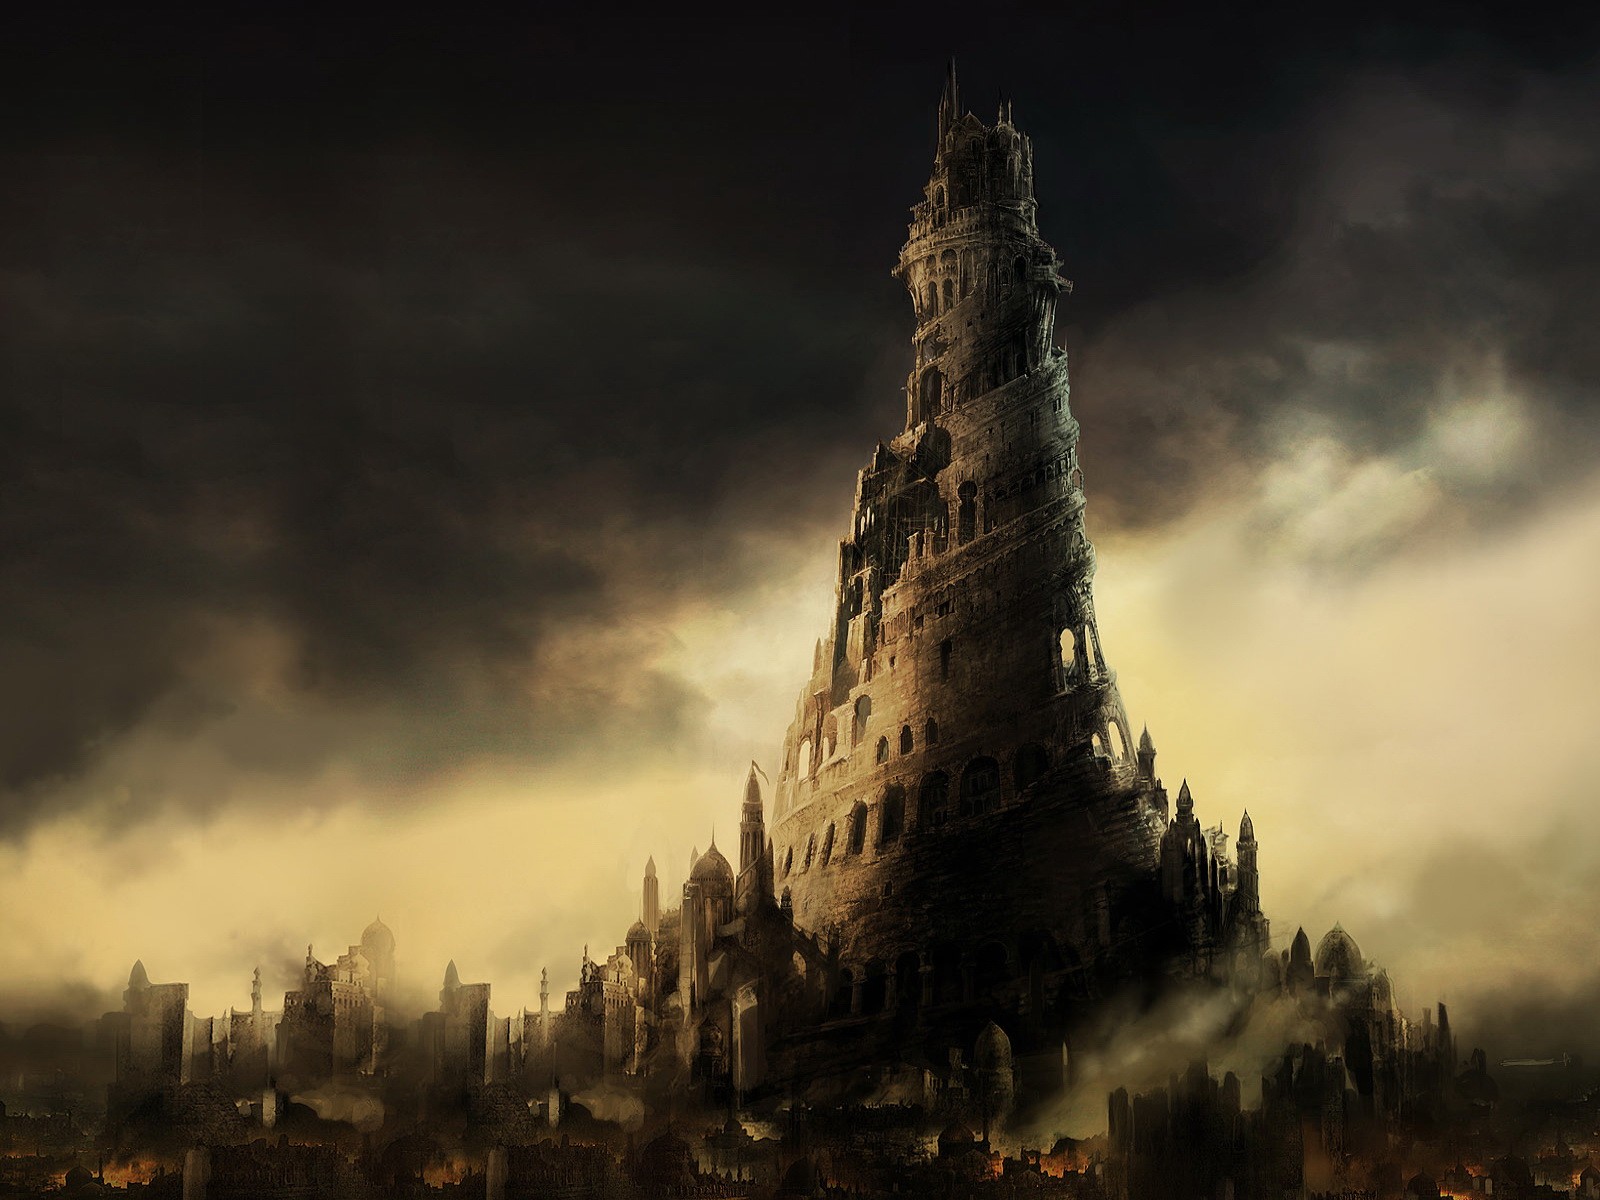 General 1600x1200 digital art CGI Tower of Babel fantasy art artwork